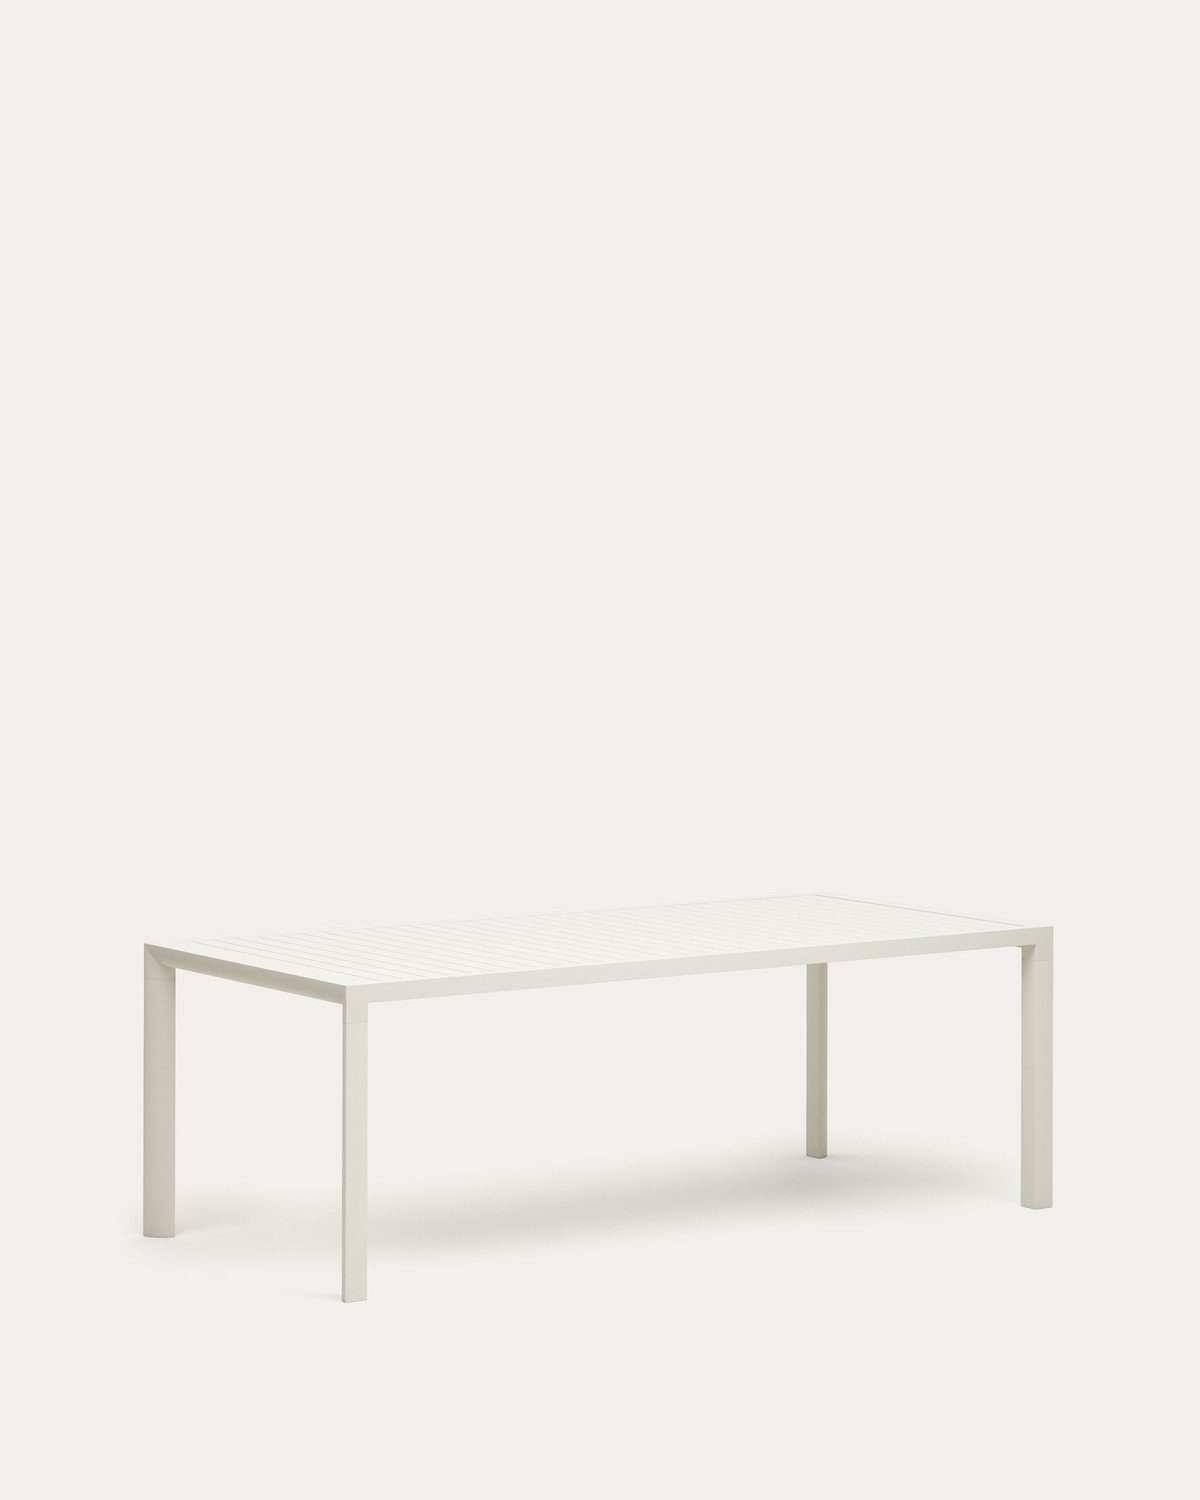 x cm Esstisch Tisch Weiß 100 75 220 Culip Gartentisch Aluminium Esstisch Natur24 x